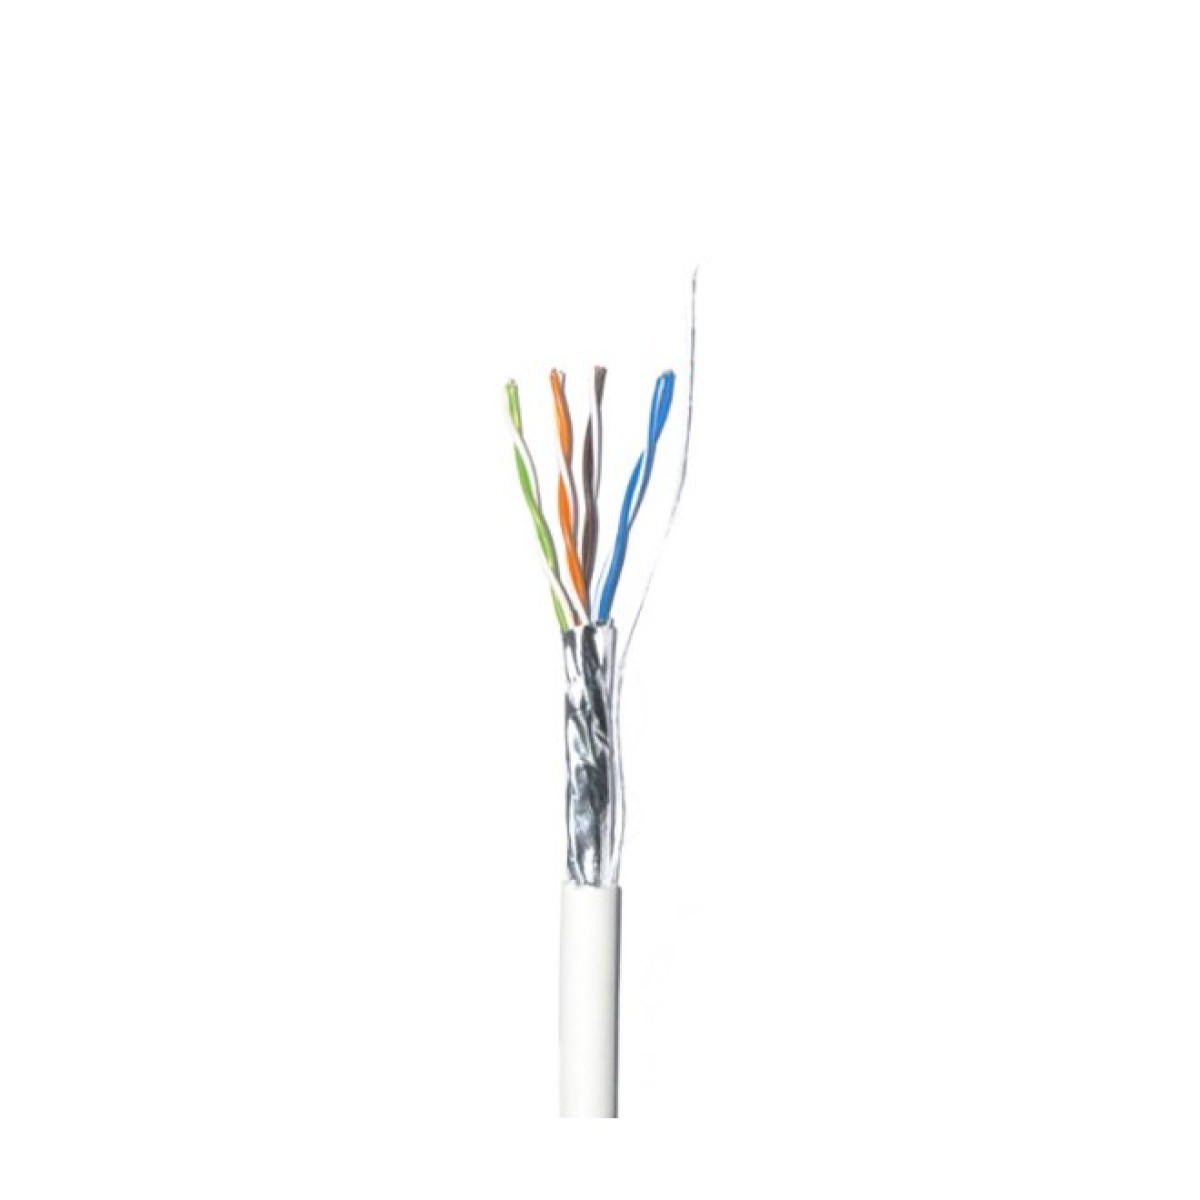 Lan кабель внутренний FTP Сat.5E 4PR CU (350МГц) PVC Indoor 100м Dialan 98_98.jpg